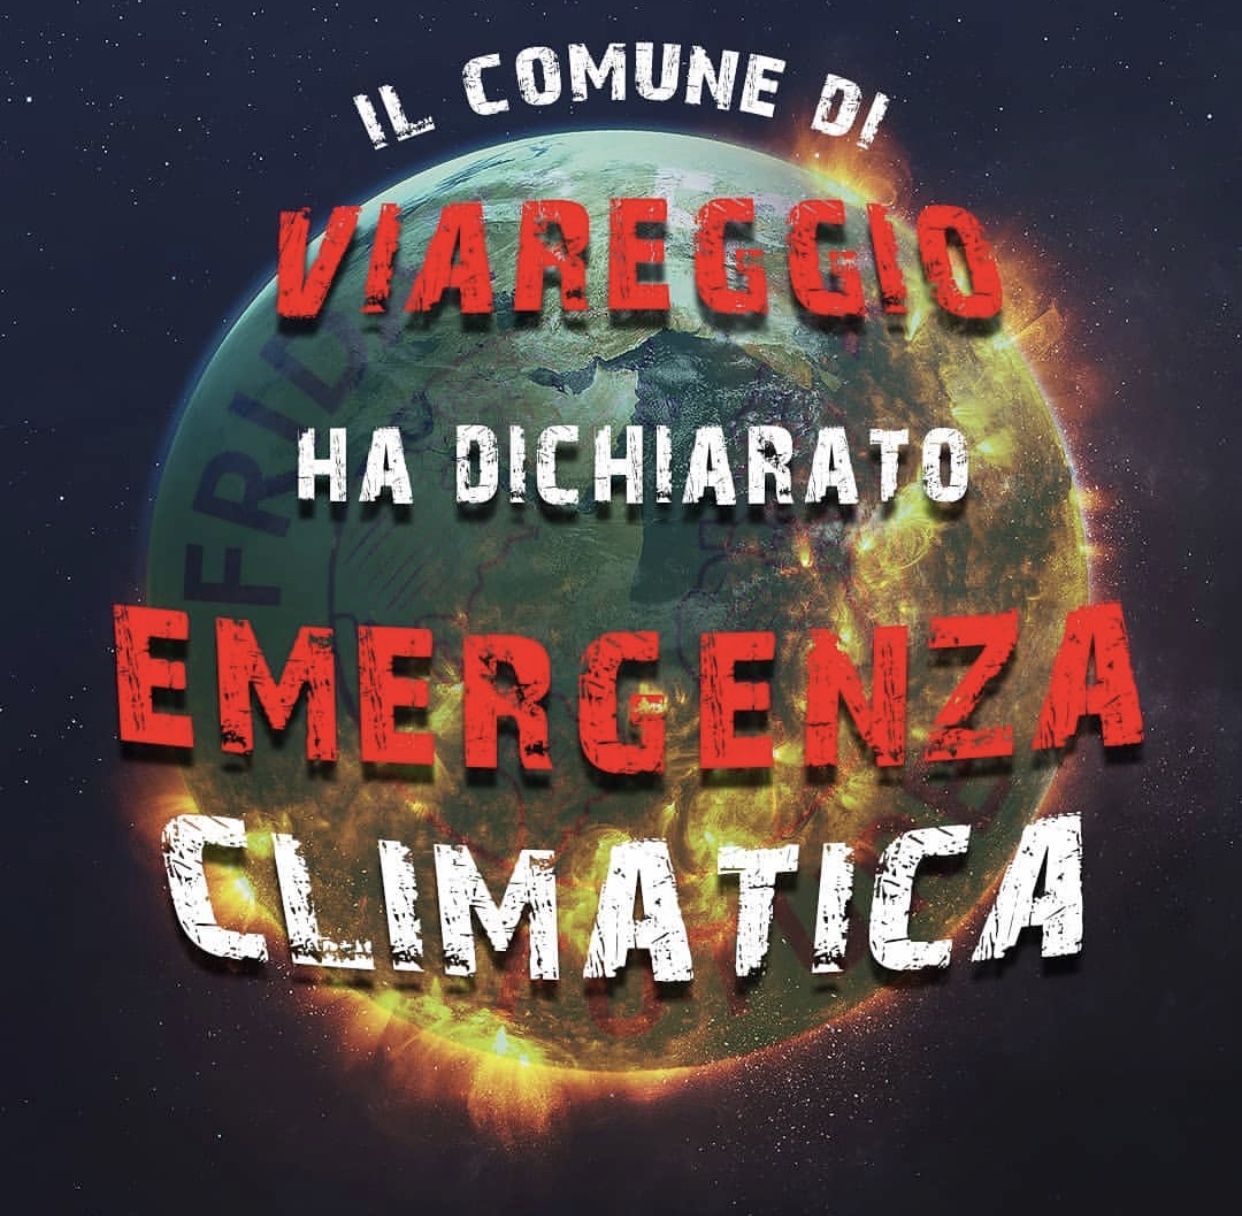 Viareggio dichiara emergenza climatica